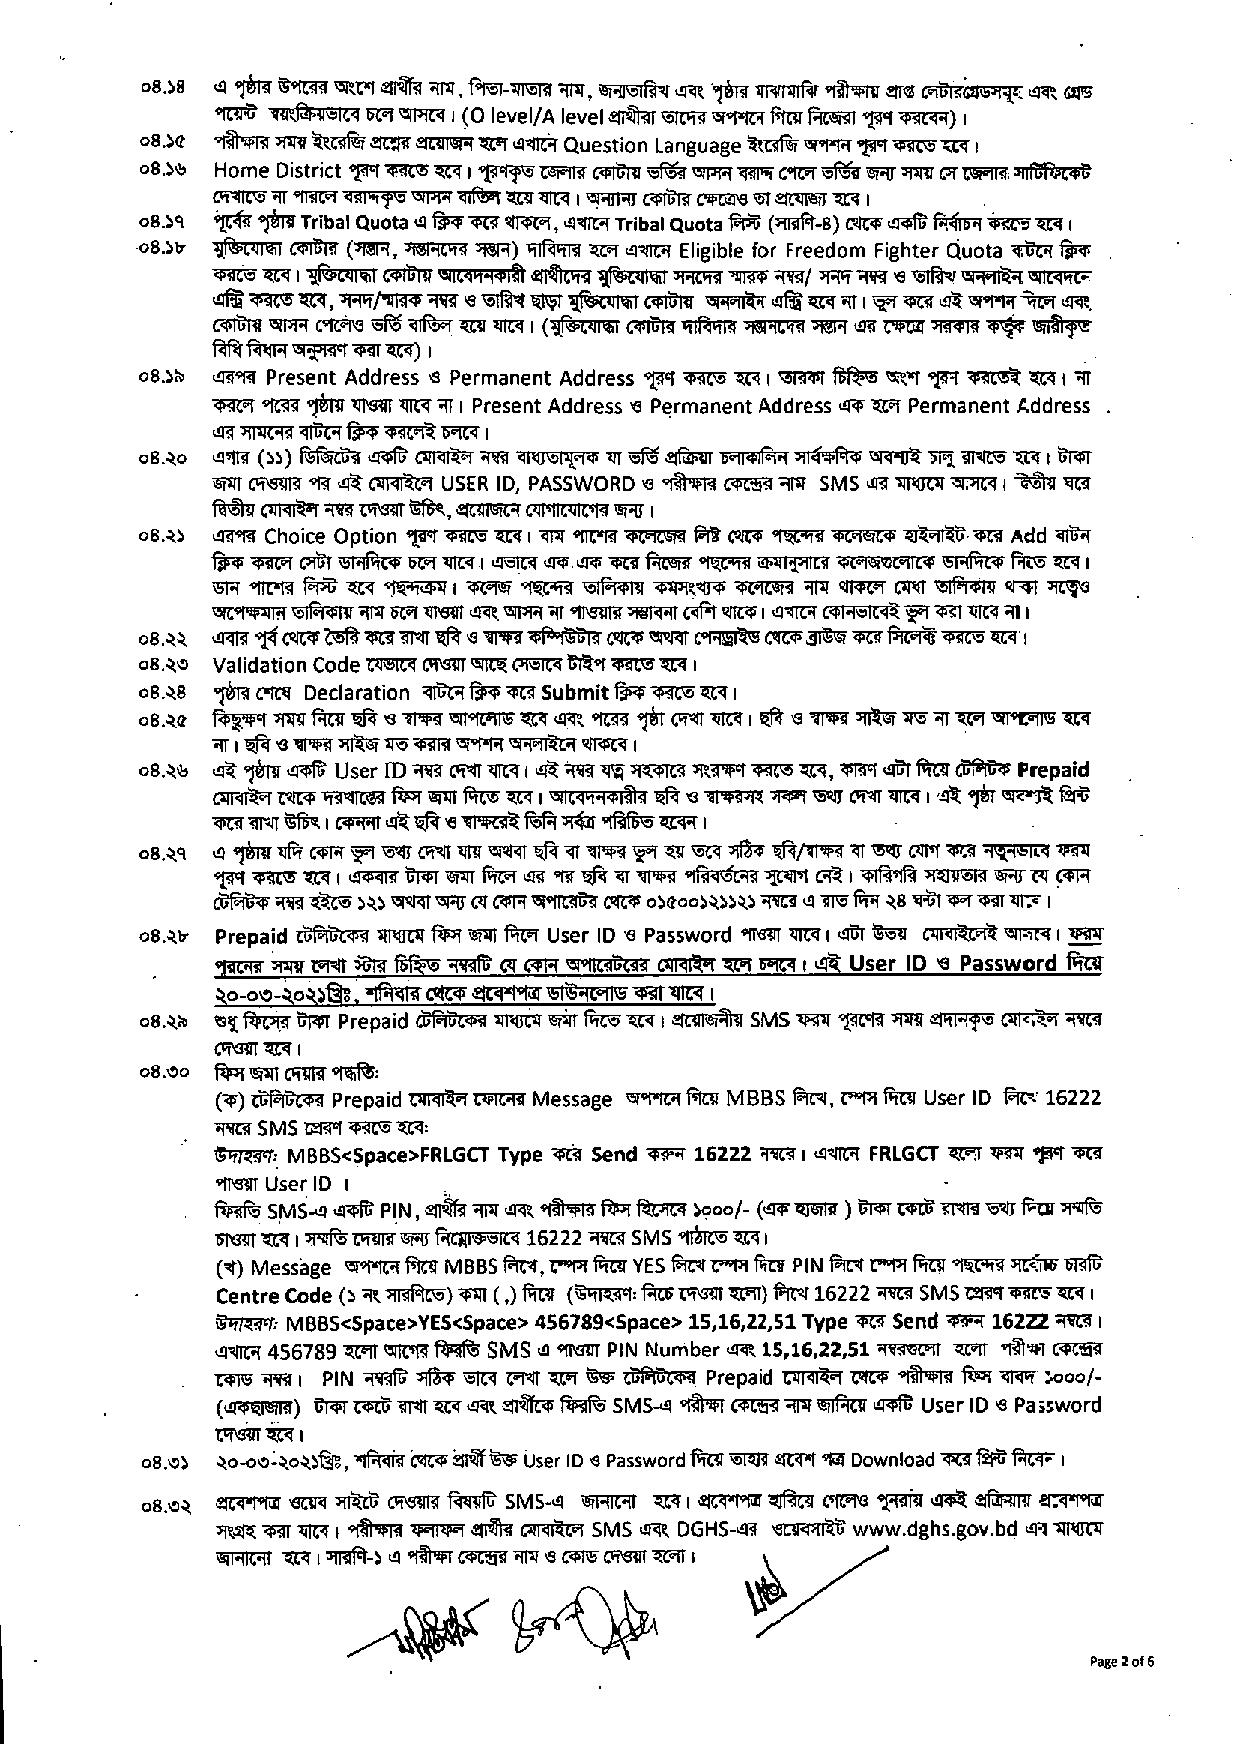 মেডিকেল ভর্তি বিজ্ঞপ্তি ২০২০-২১ PDF Download dghs.gov.bd